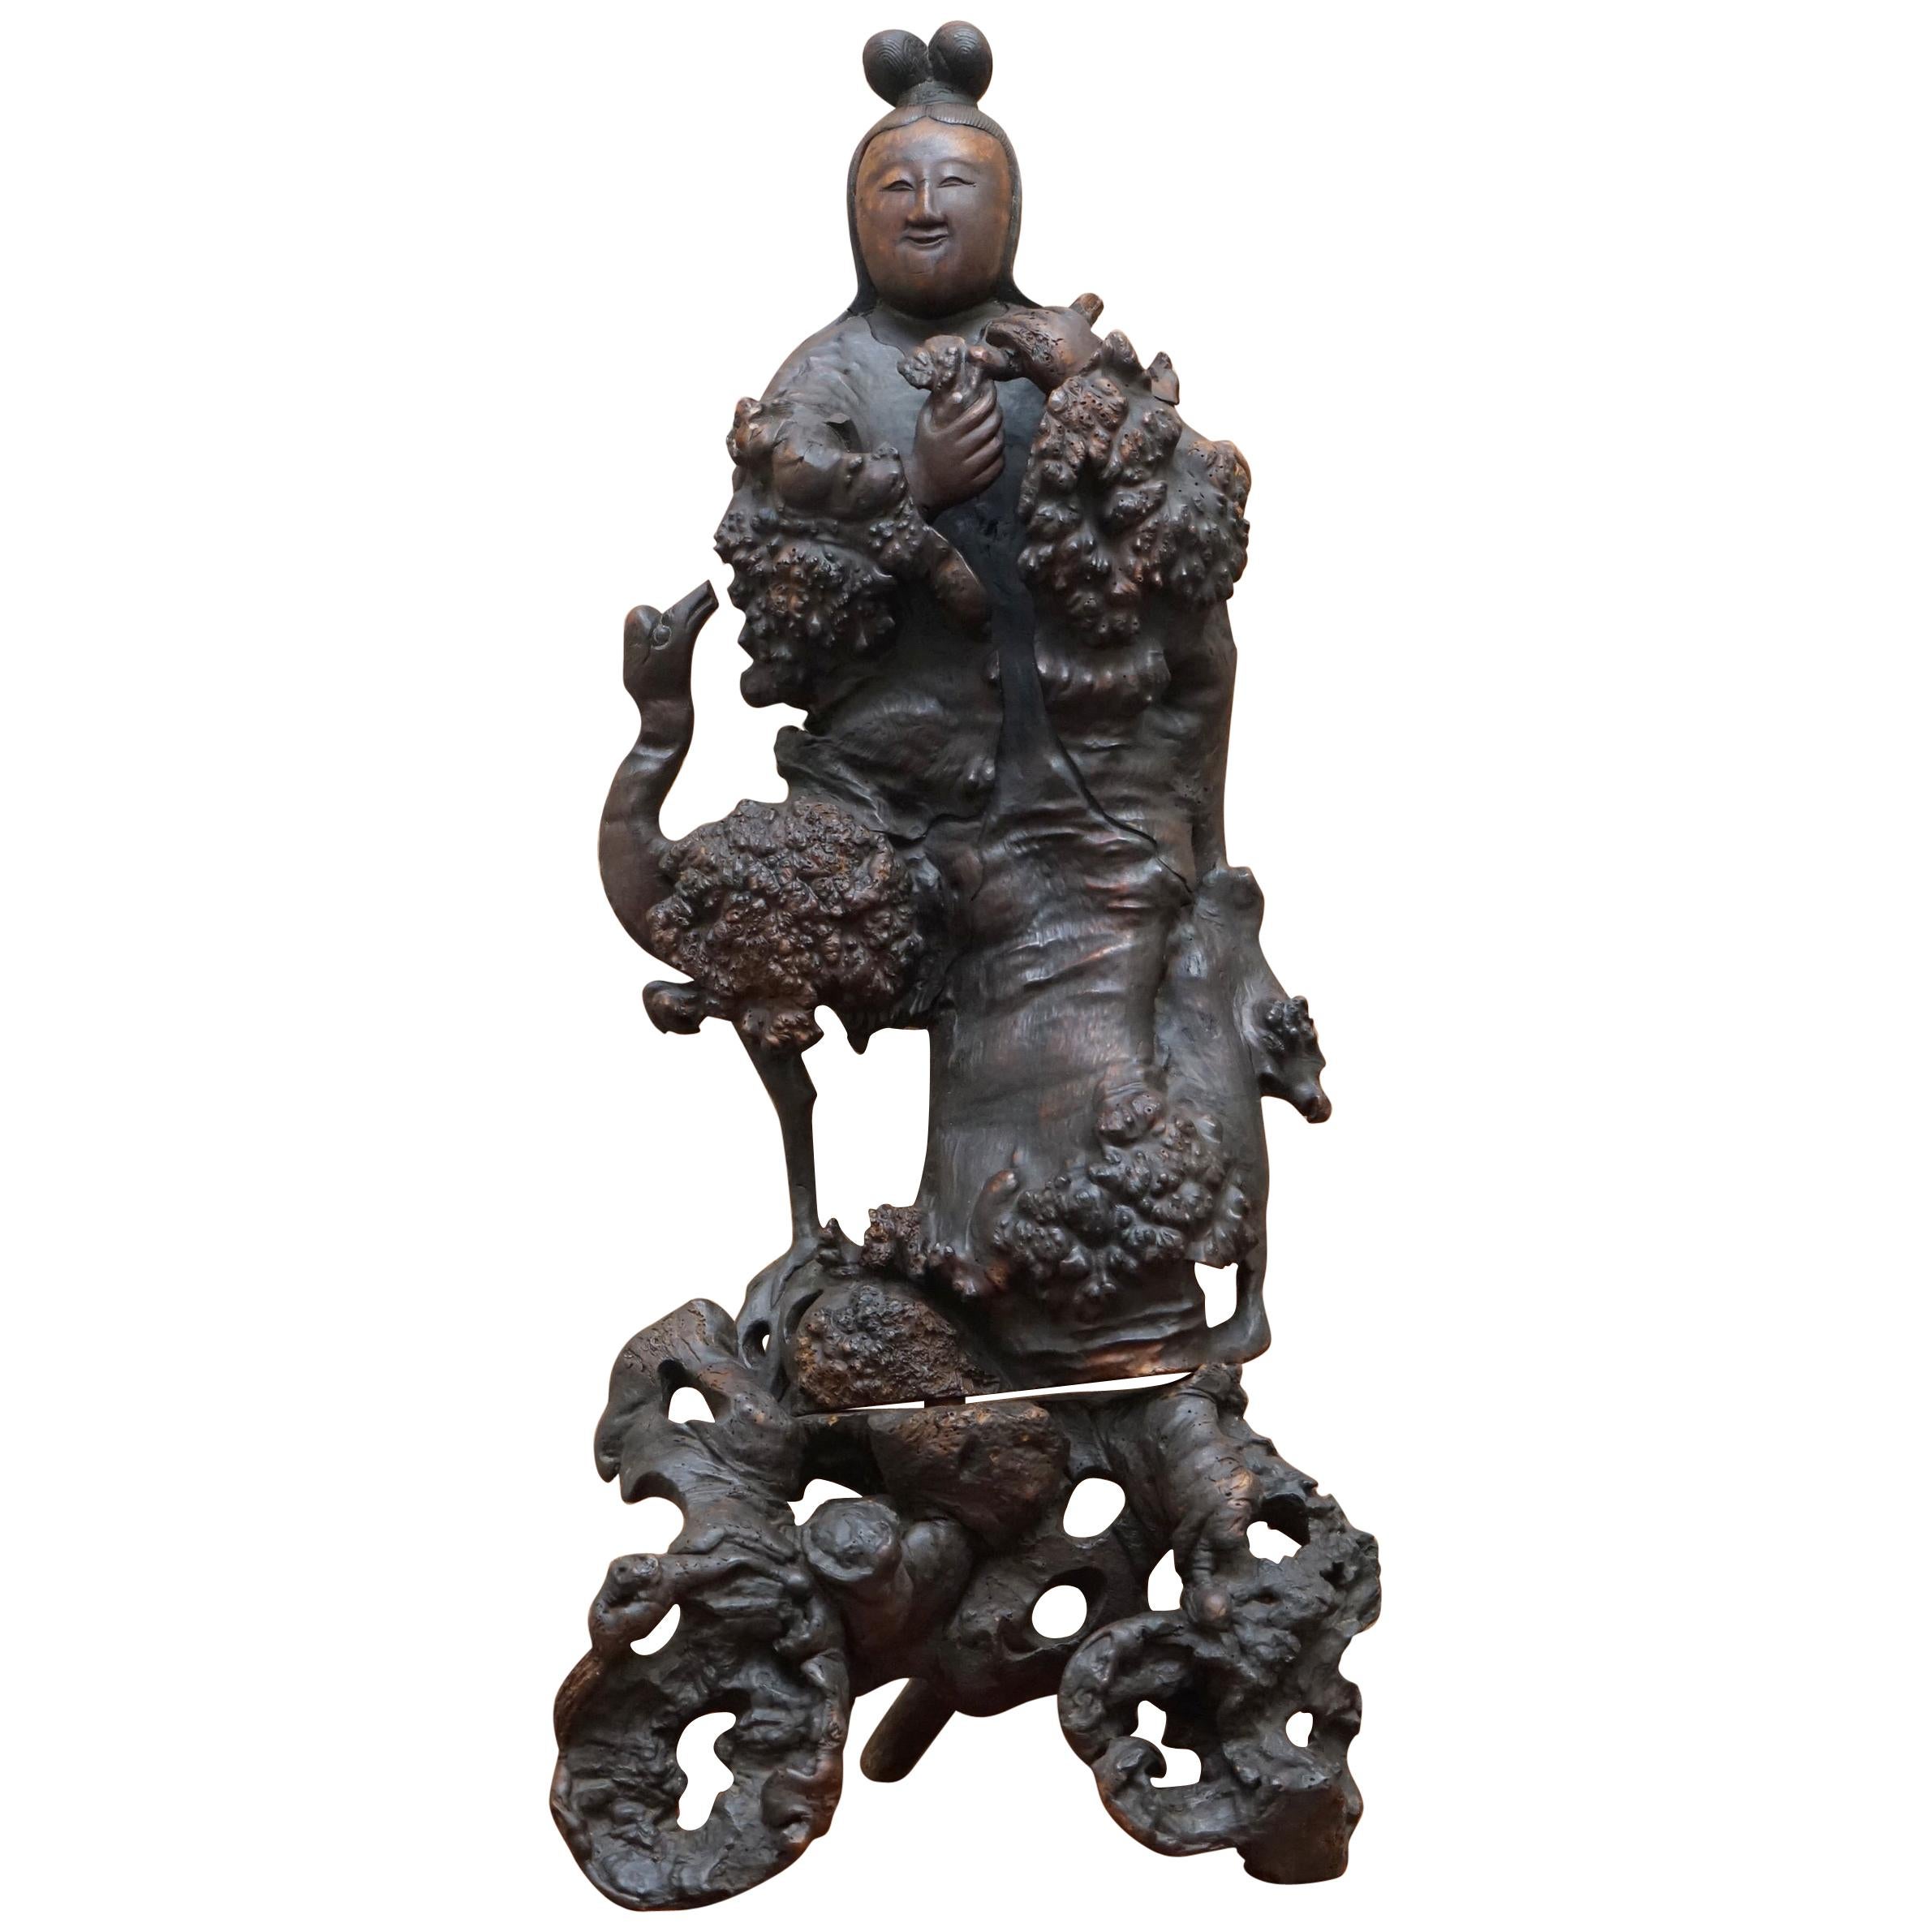 Ancienne sculpture en bois de racine chinoise datant d'environ 1880 représentant un bouddhiste en guise de sagesse, très détectée